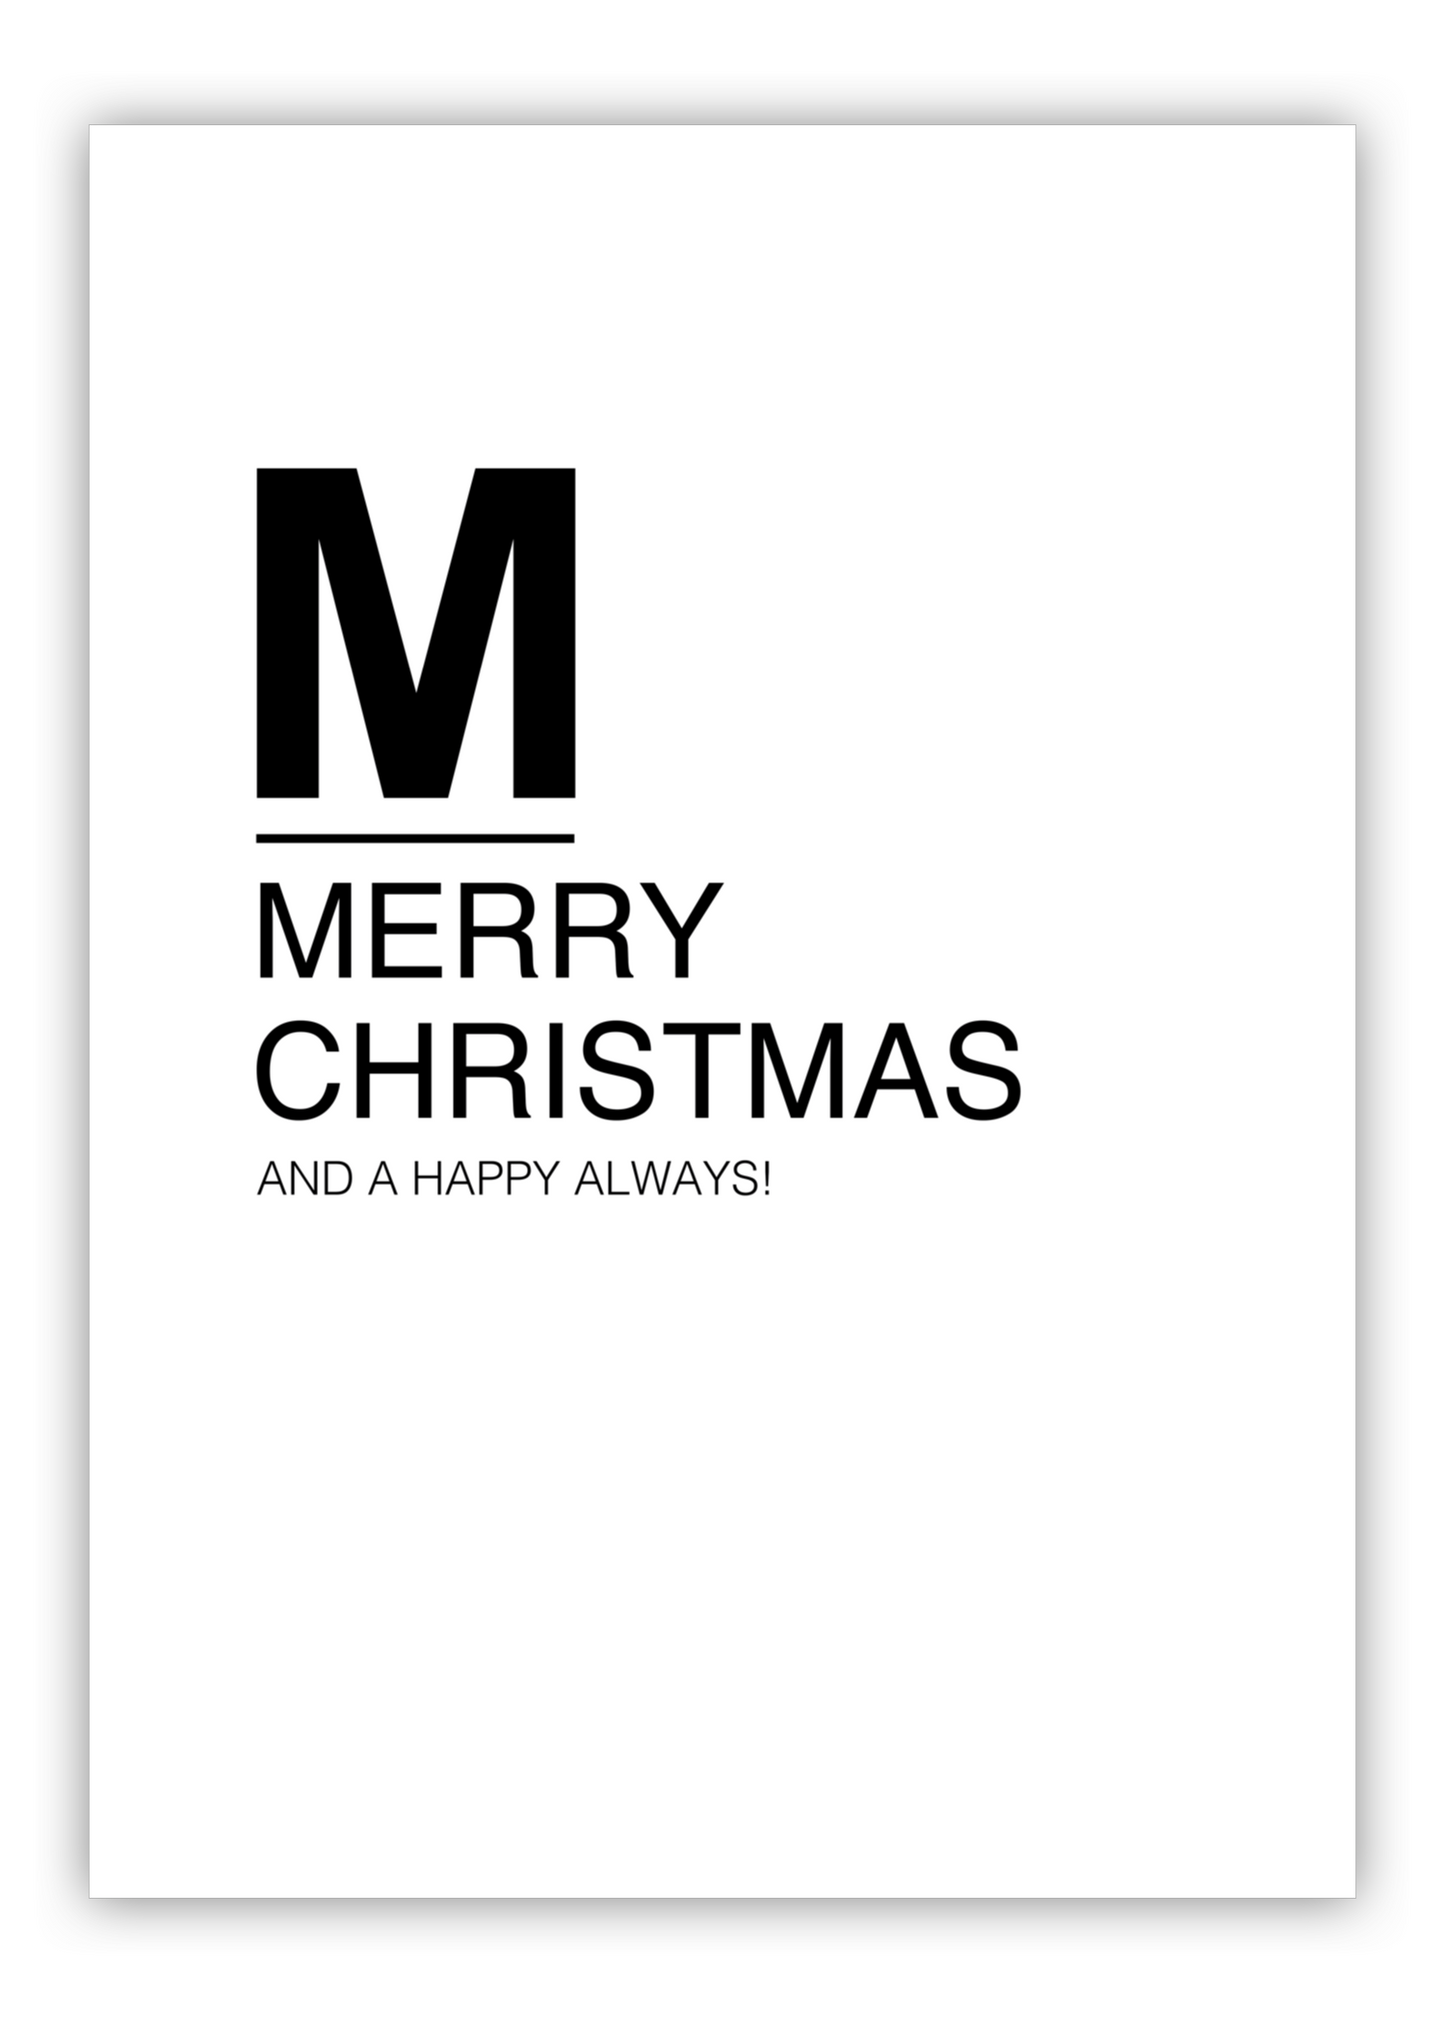 huisjevansanne kerstposter zwart wit met tekst merry christmas and a happy always